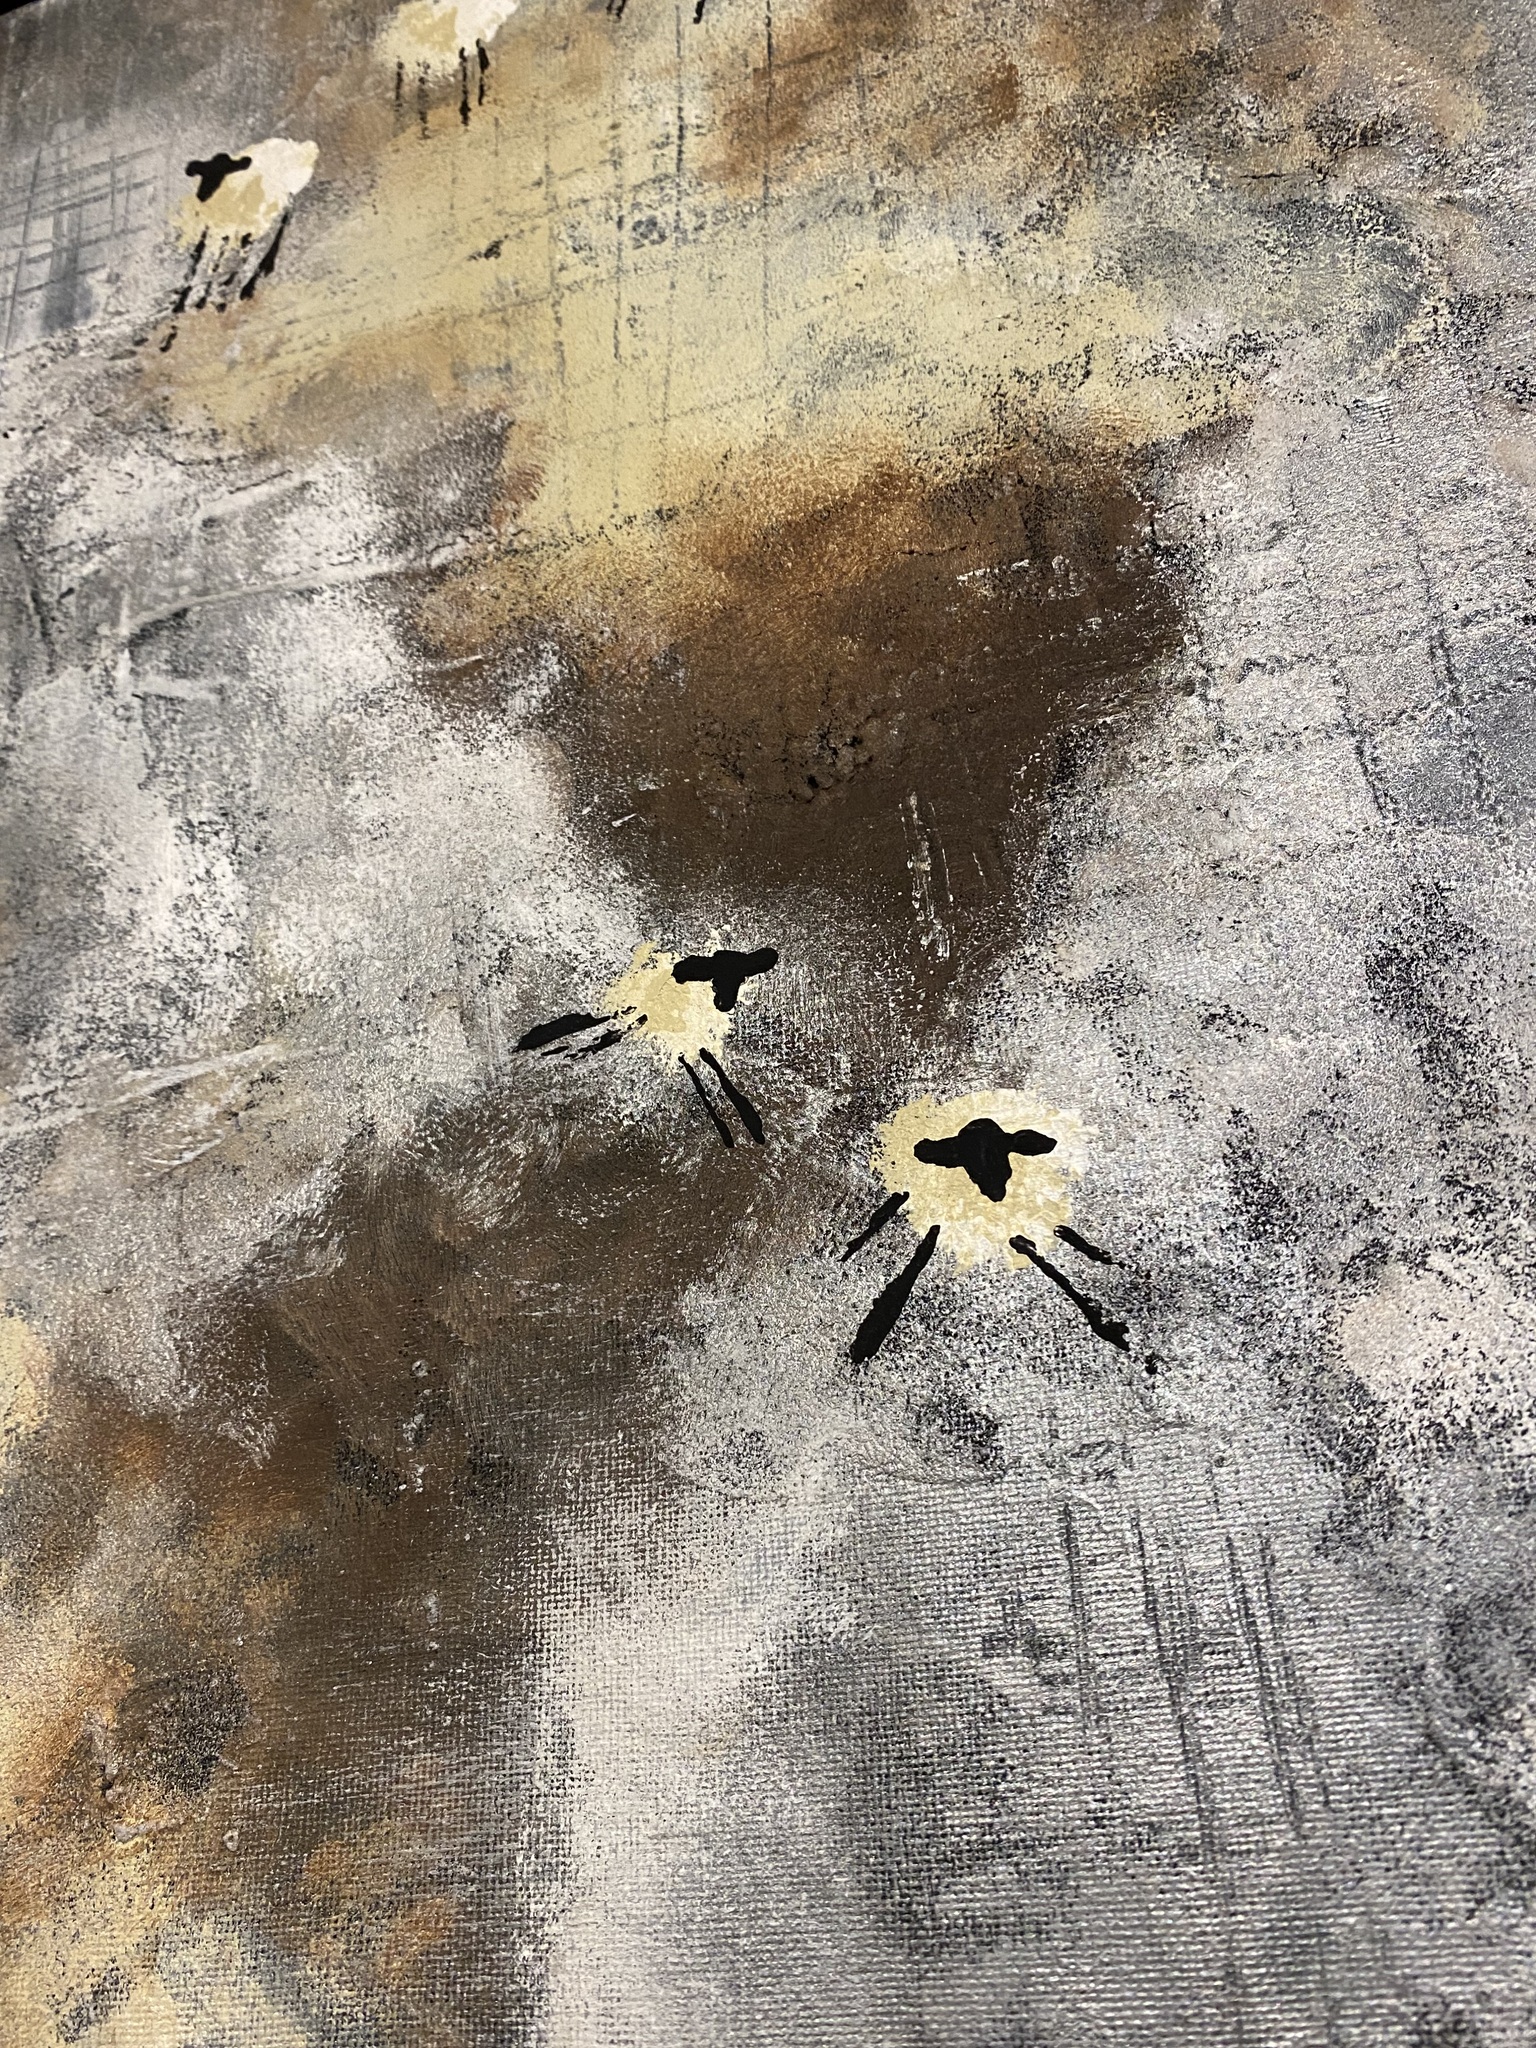 Snygg tavla i jordiga toner i stl 54x44 cm. Fårtavlor av konstnärinnan hittar du online på cbruggmann.se